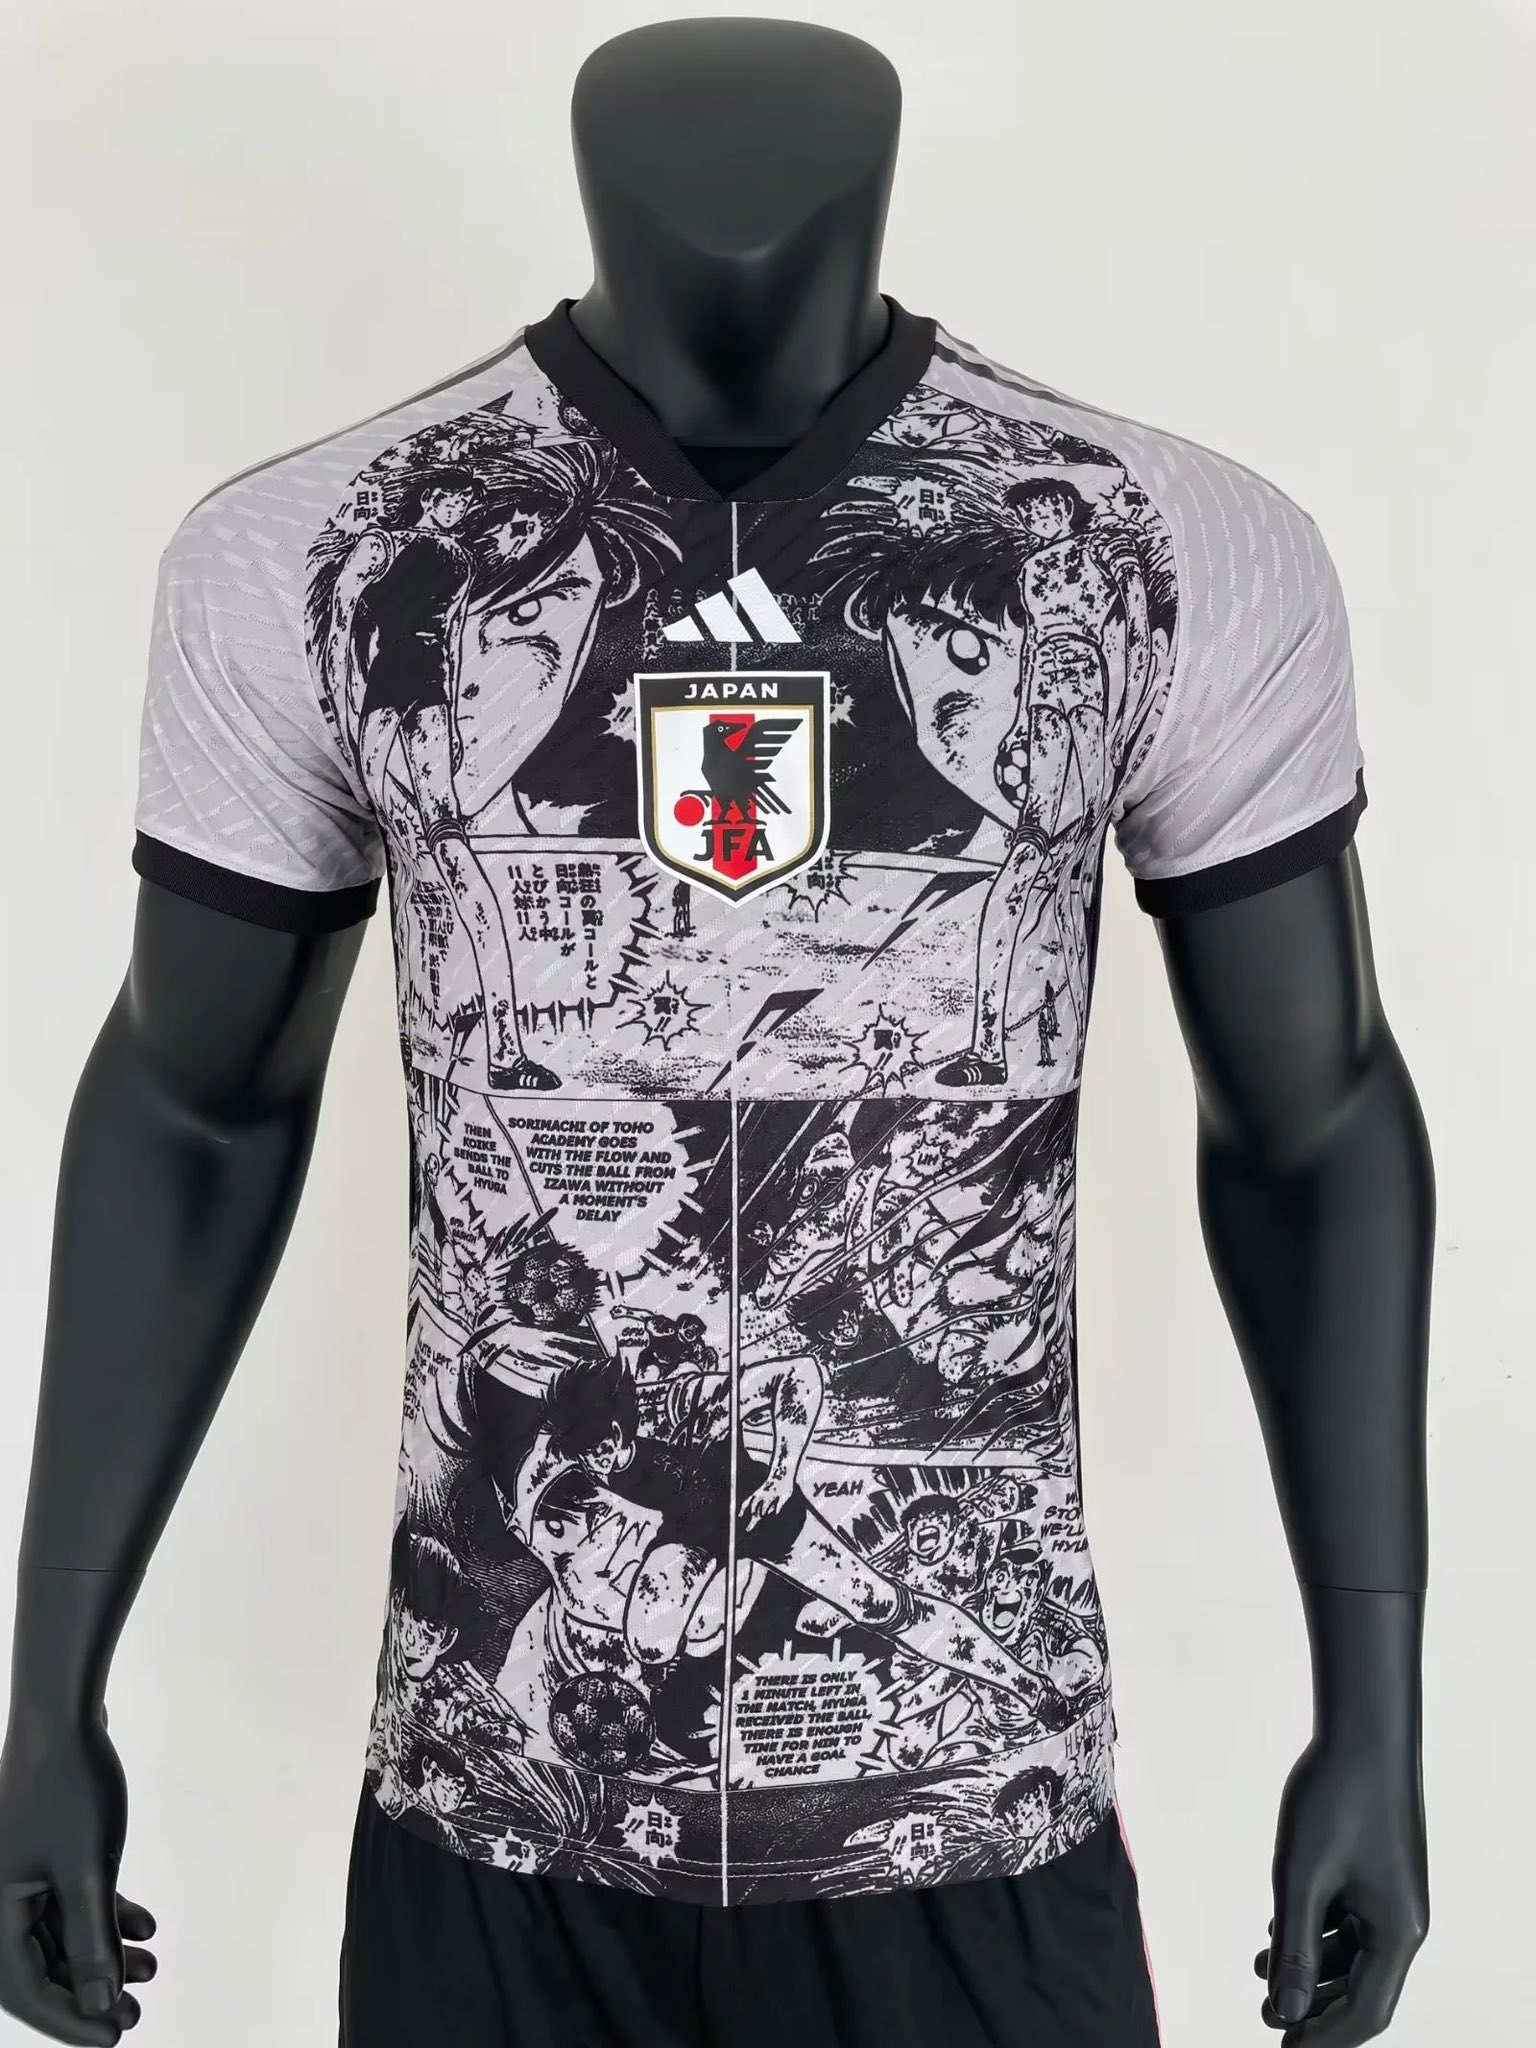 FutbolJersey77 on X: Disponibles la nueva camiseta especial de Japón por  Oliver y Benji/ CAPTAIN TSUBASA  / X